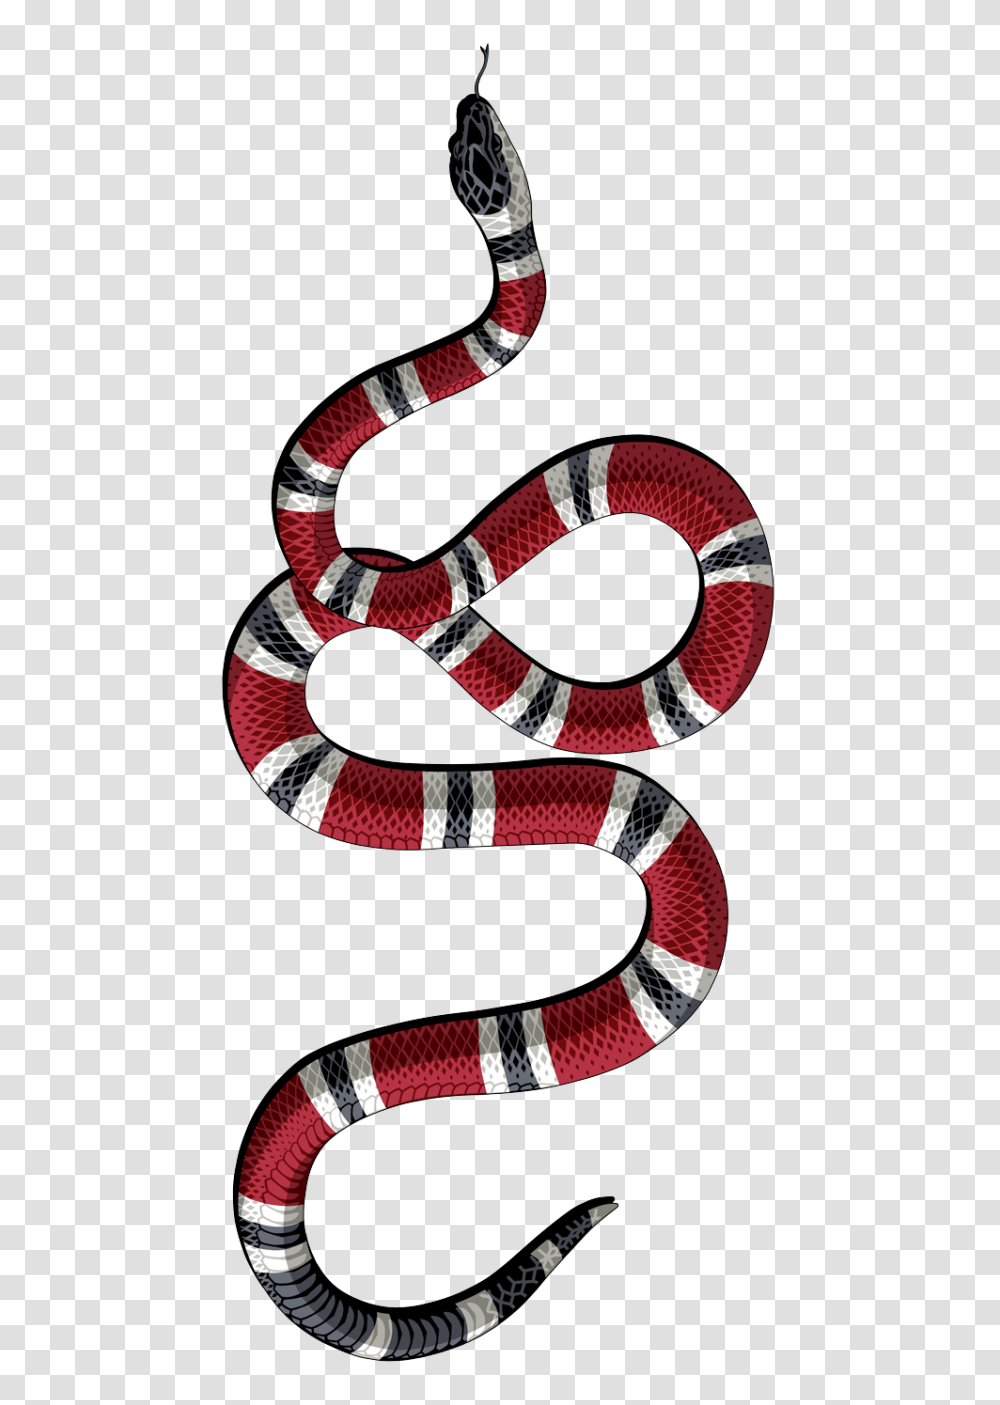 Logos In Wallpaper Iphone, King Snake, Reptile, Animal, Sandal Transparent Png